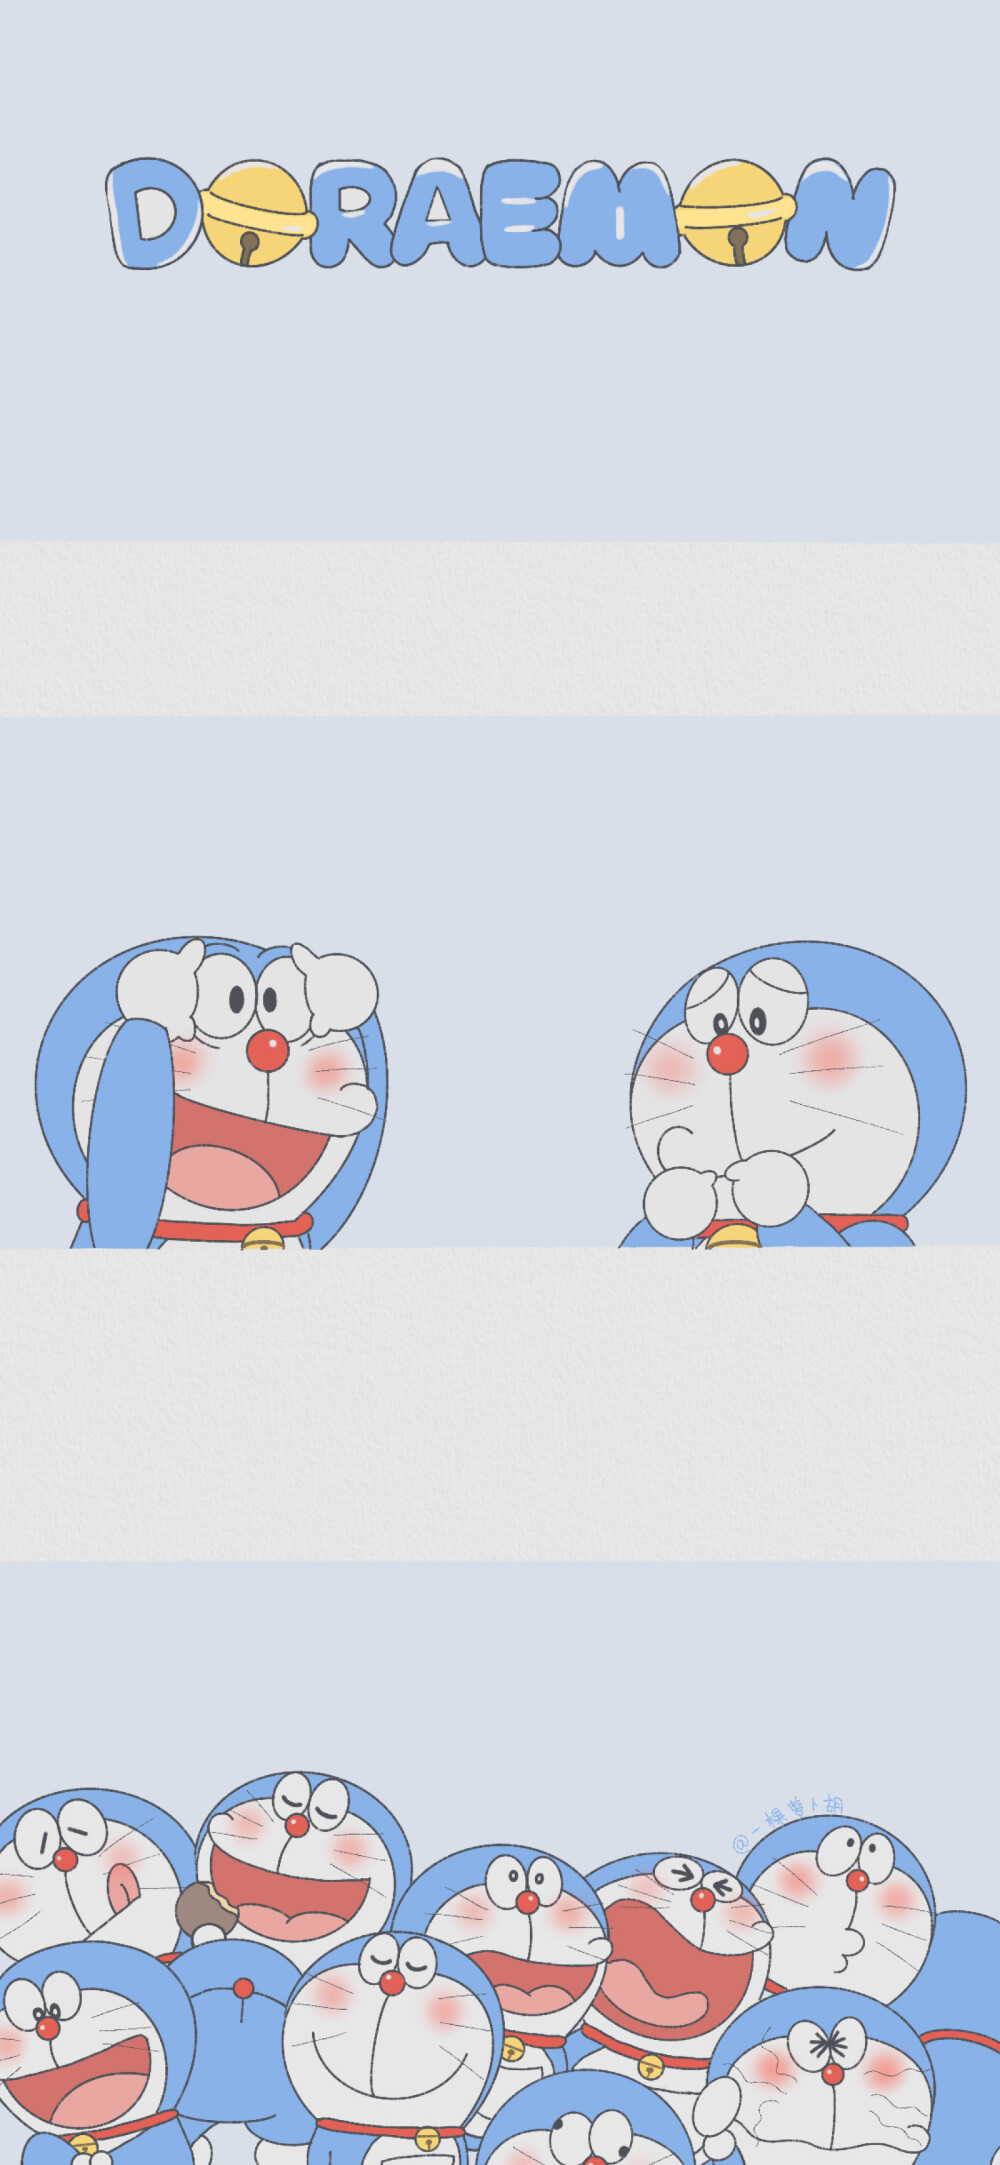 哆啦a梦 机器猫插画 素材 ins 韩系 可爱 简约 手绘 动漫 锁屏 屏 